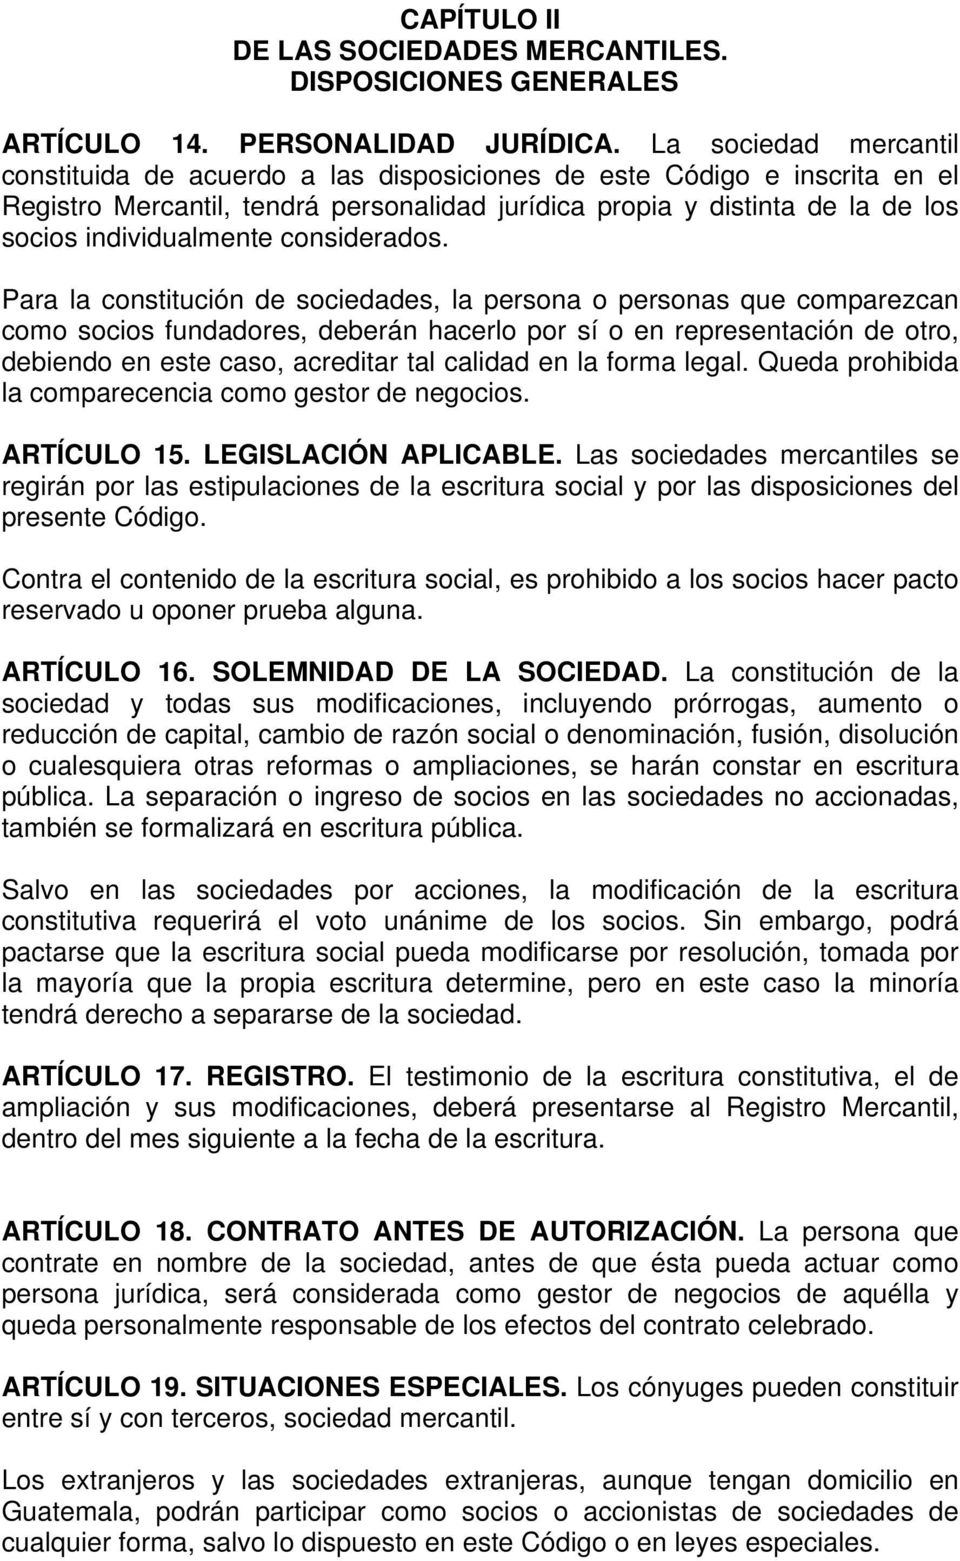 Decreto Numero 2 70 El Congreso De La Republica De Guatemala